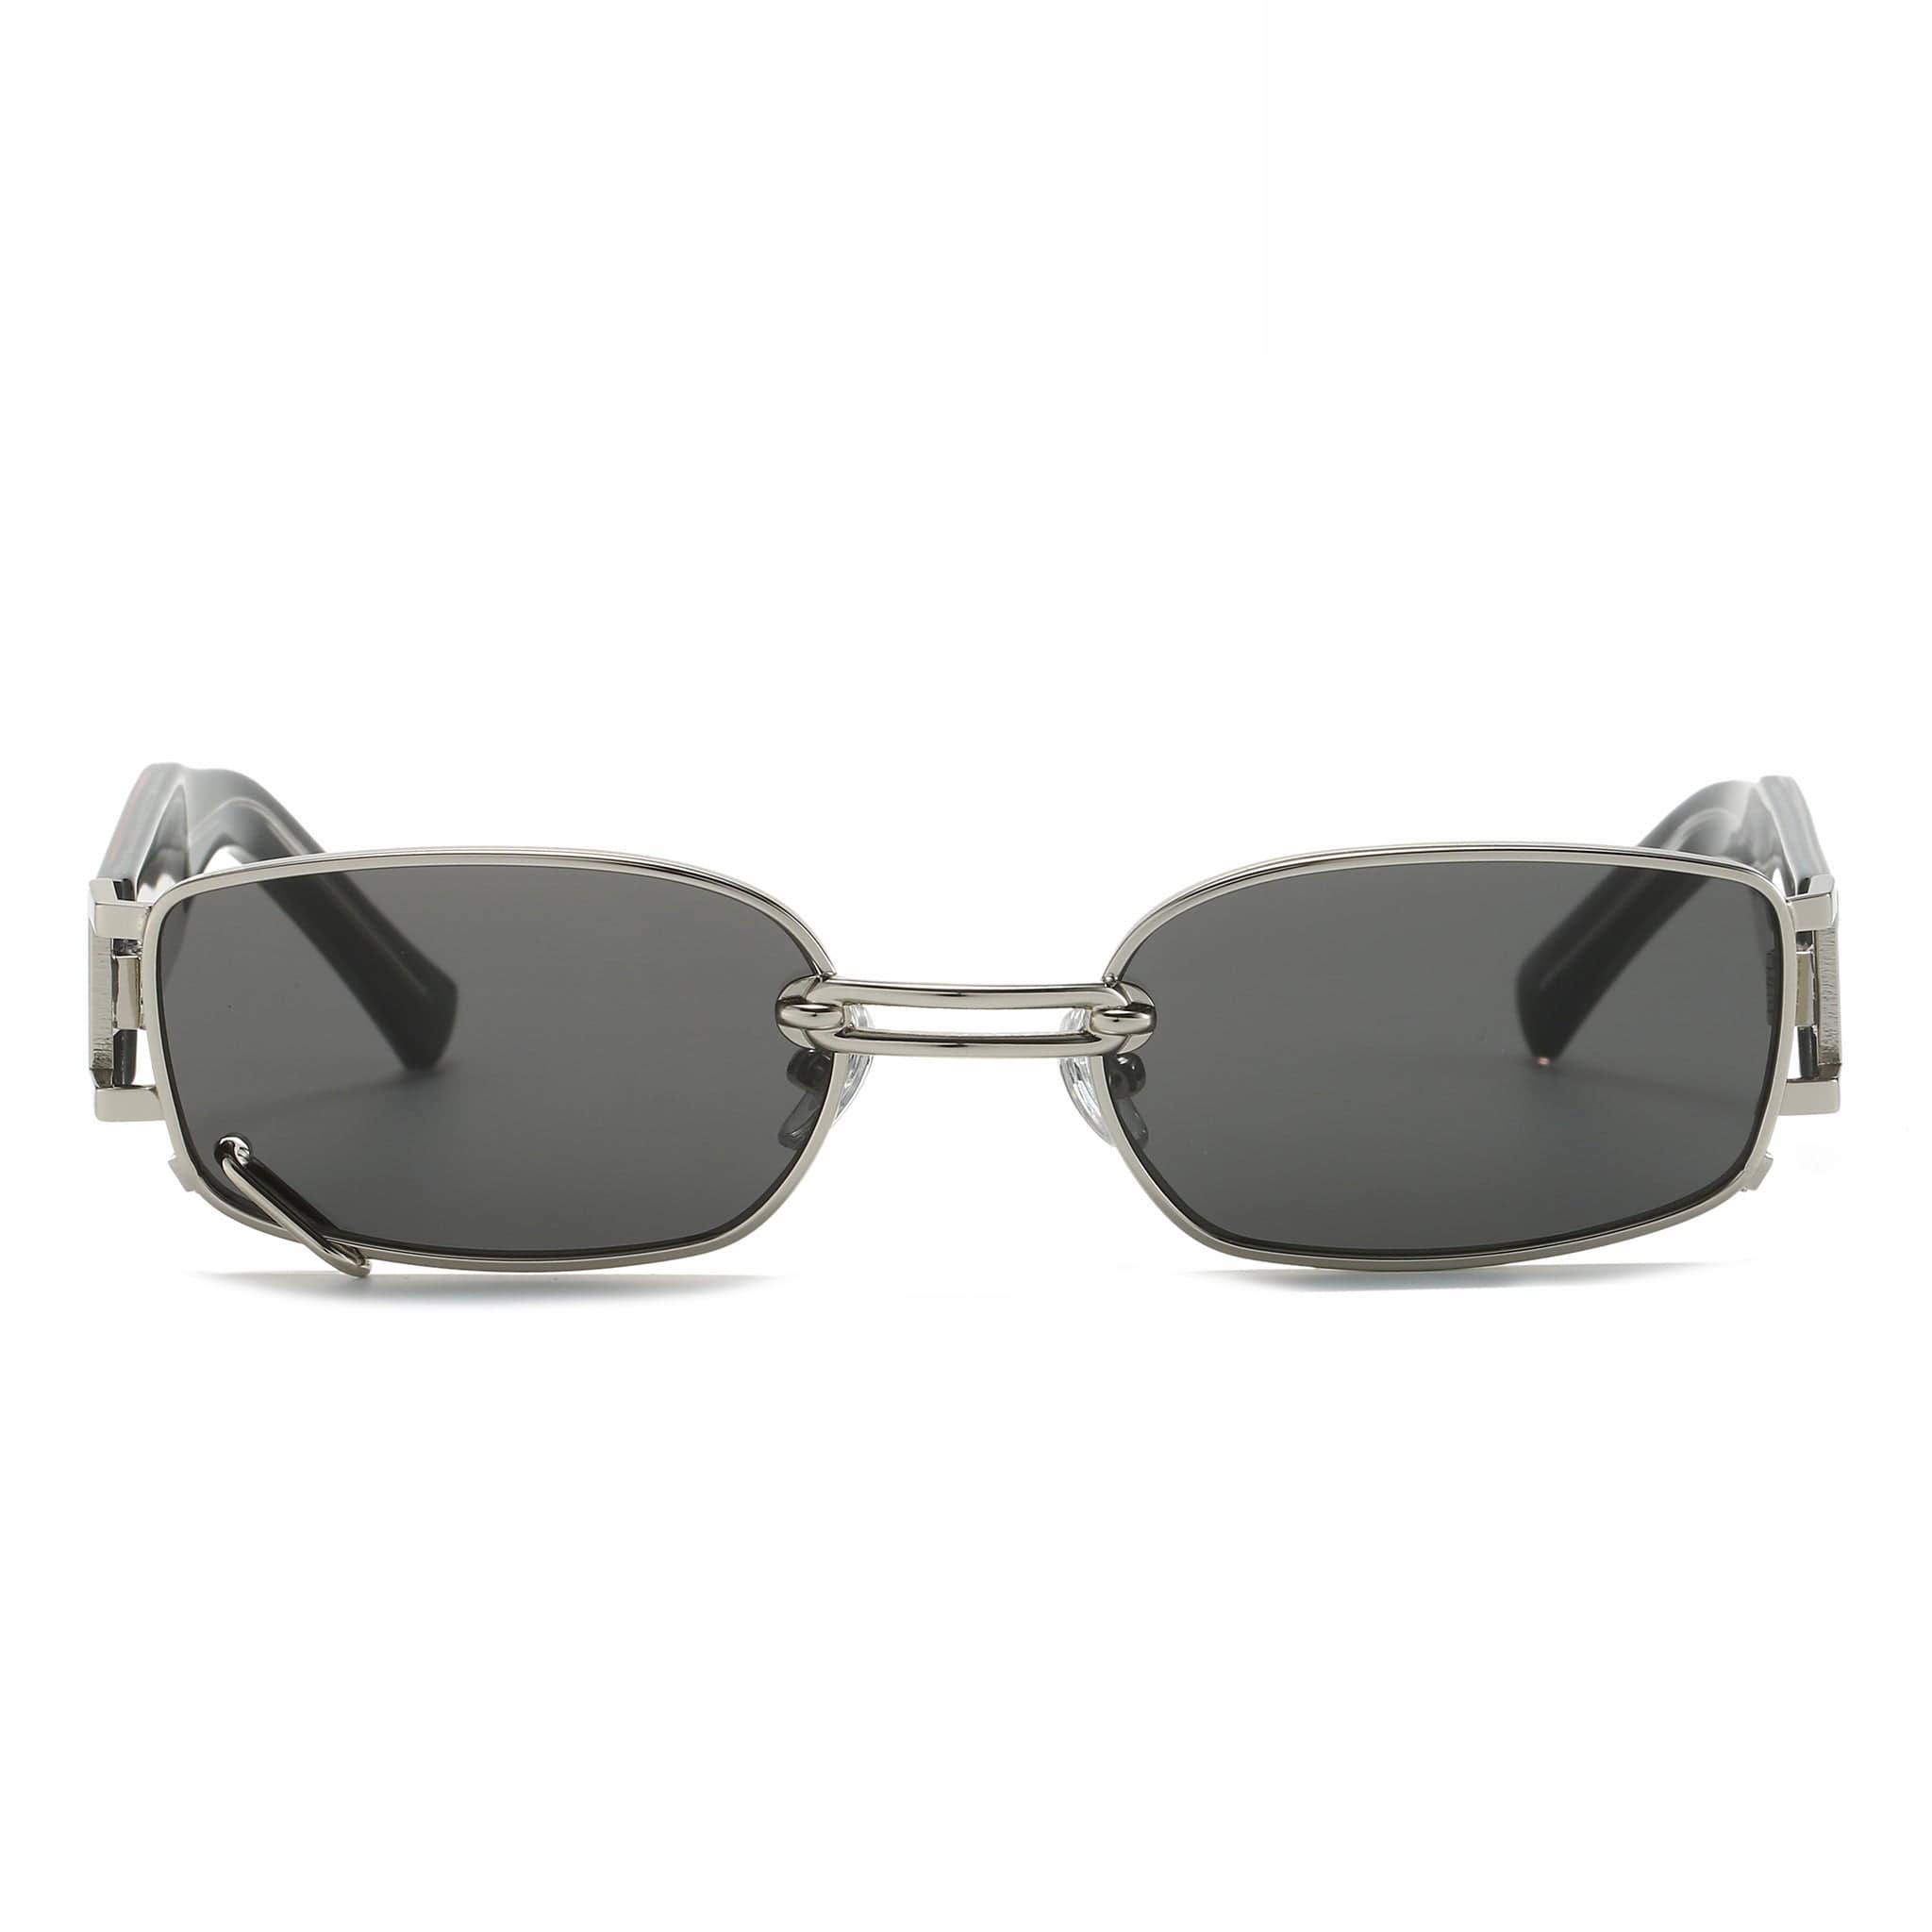 GIUSTIZIERI VECCHI Sunglasses Medium / Black with Silver Celestial Shield Uno